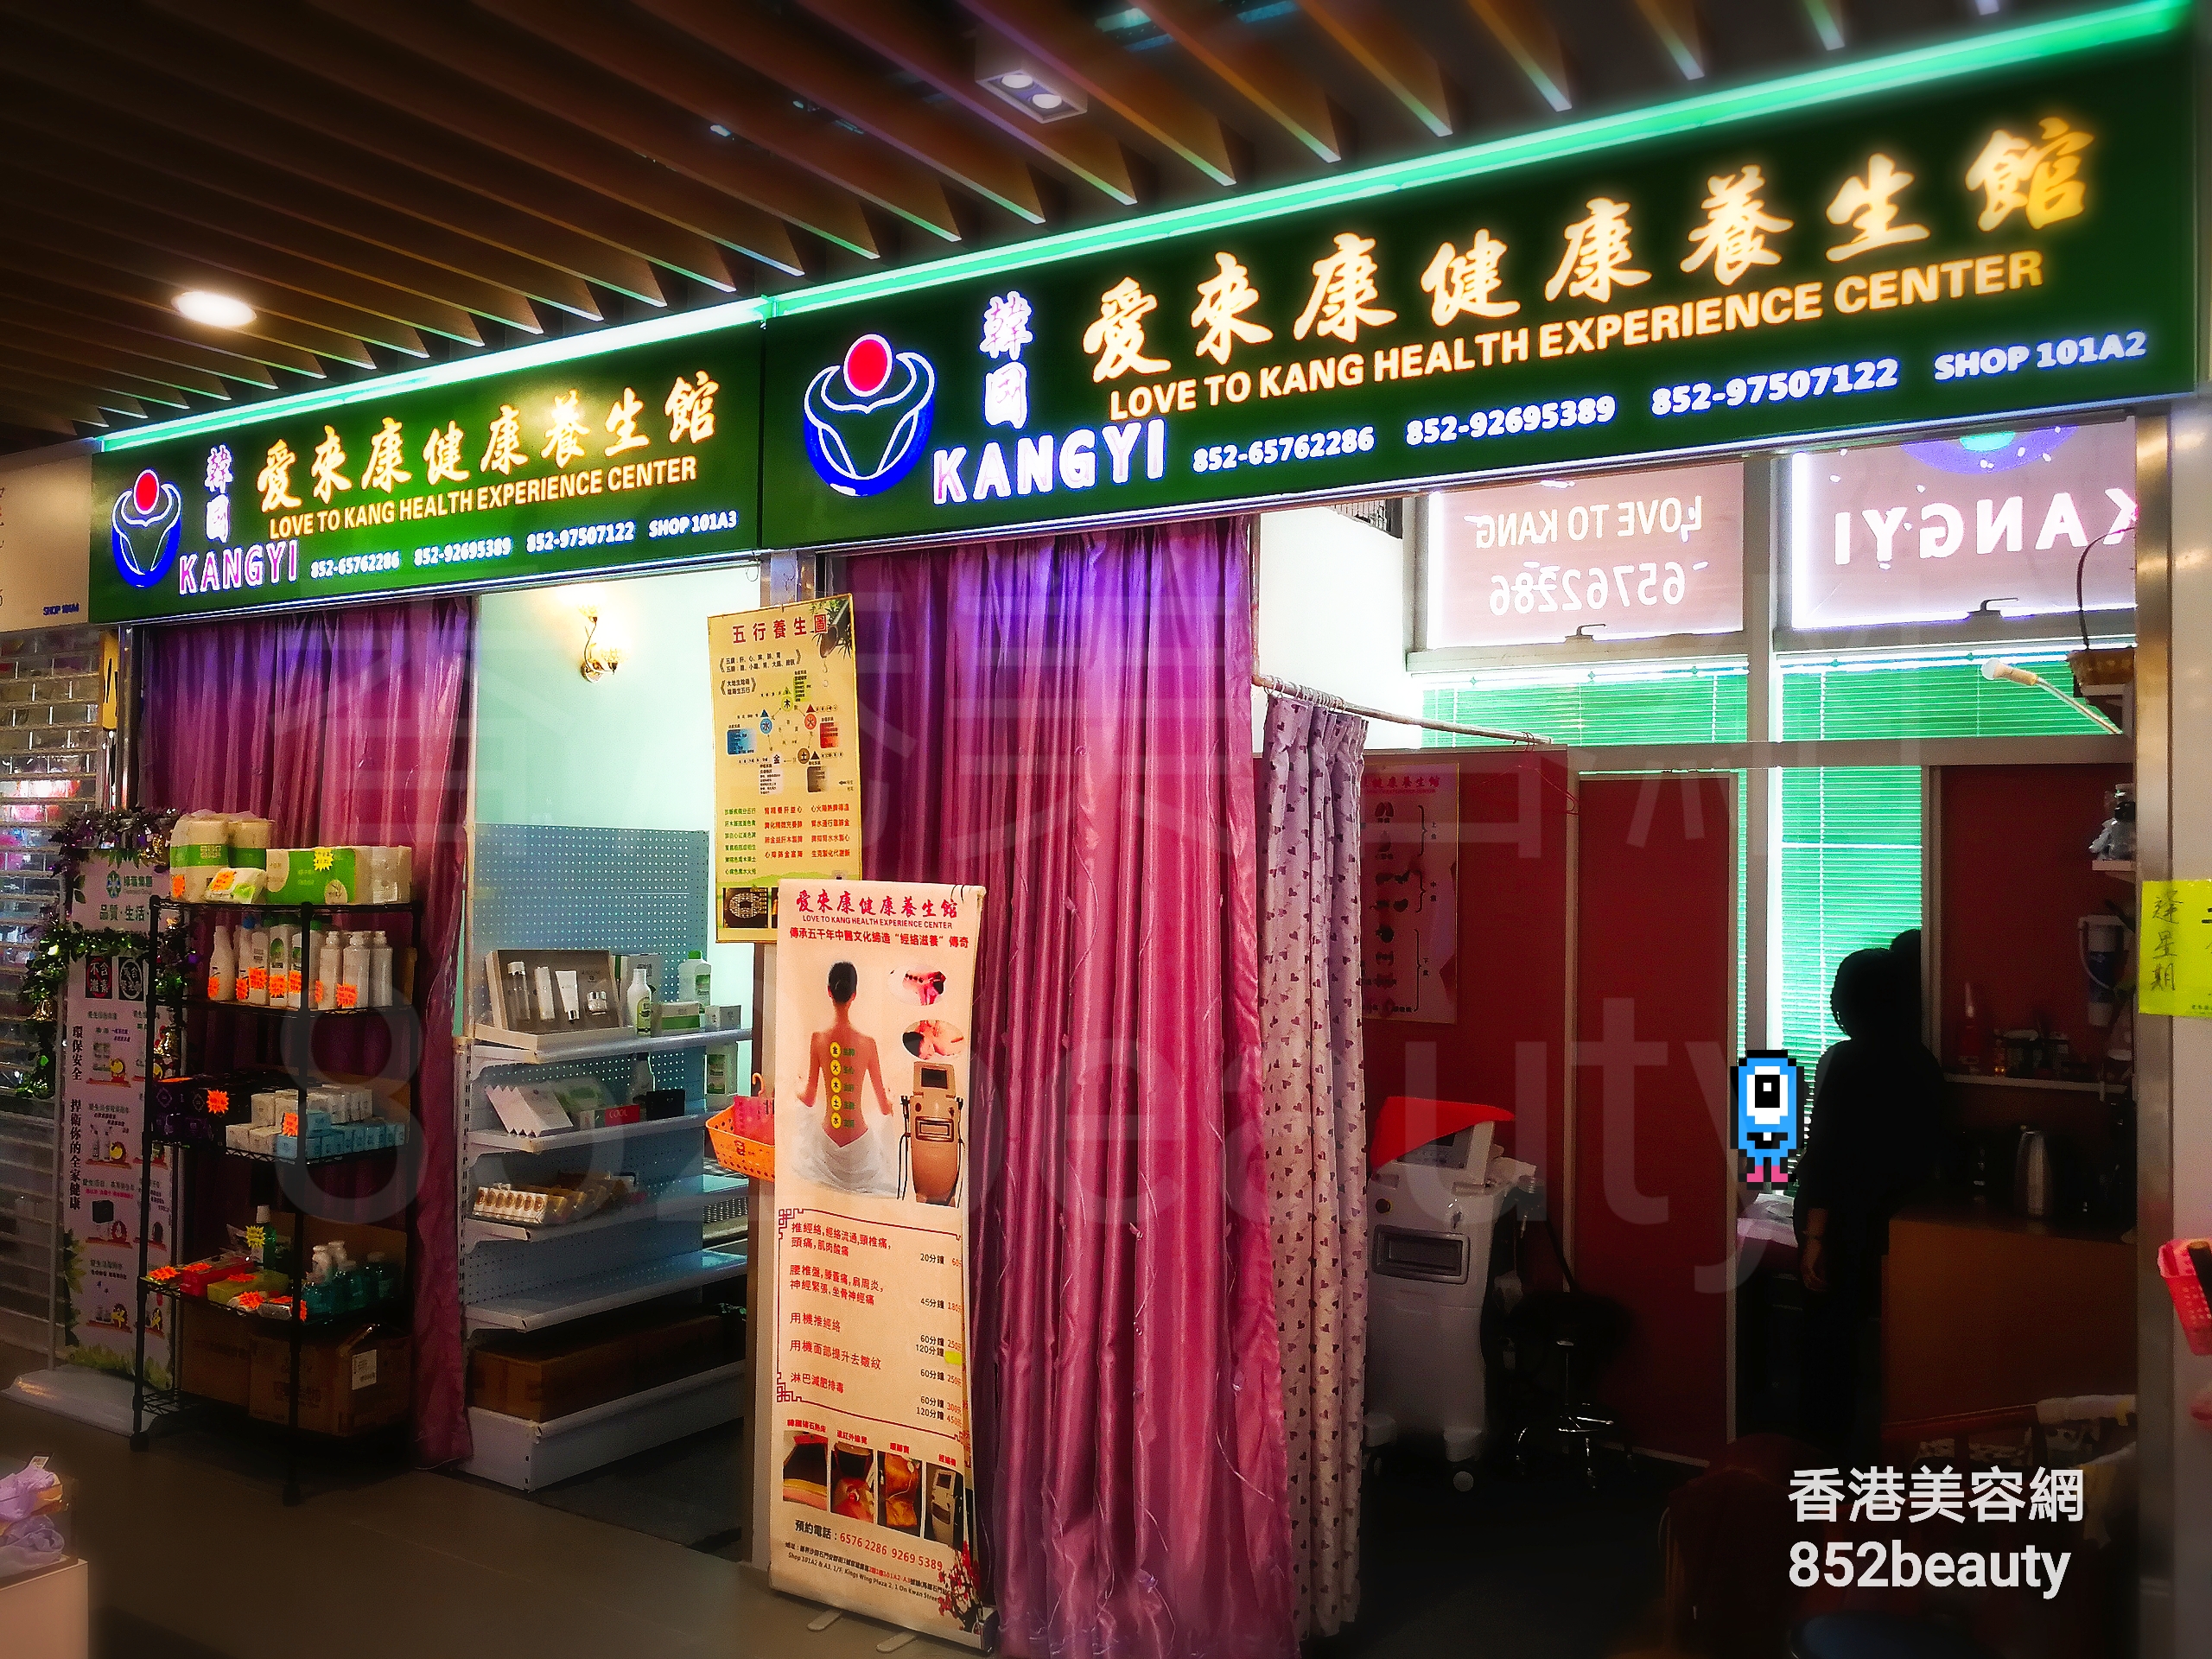 香港美容網 Hong Kong Beauty Salon 美容院 / 美容師: 愛來康 健康養生館